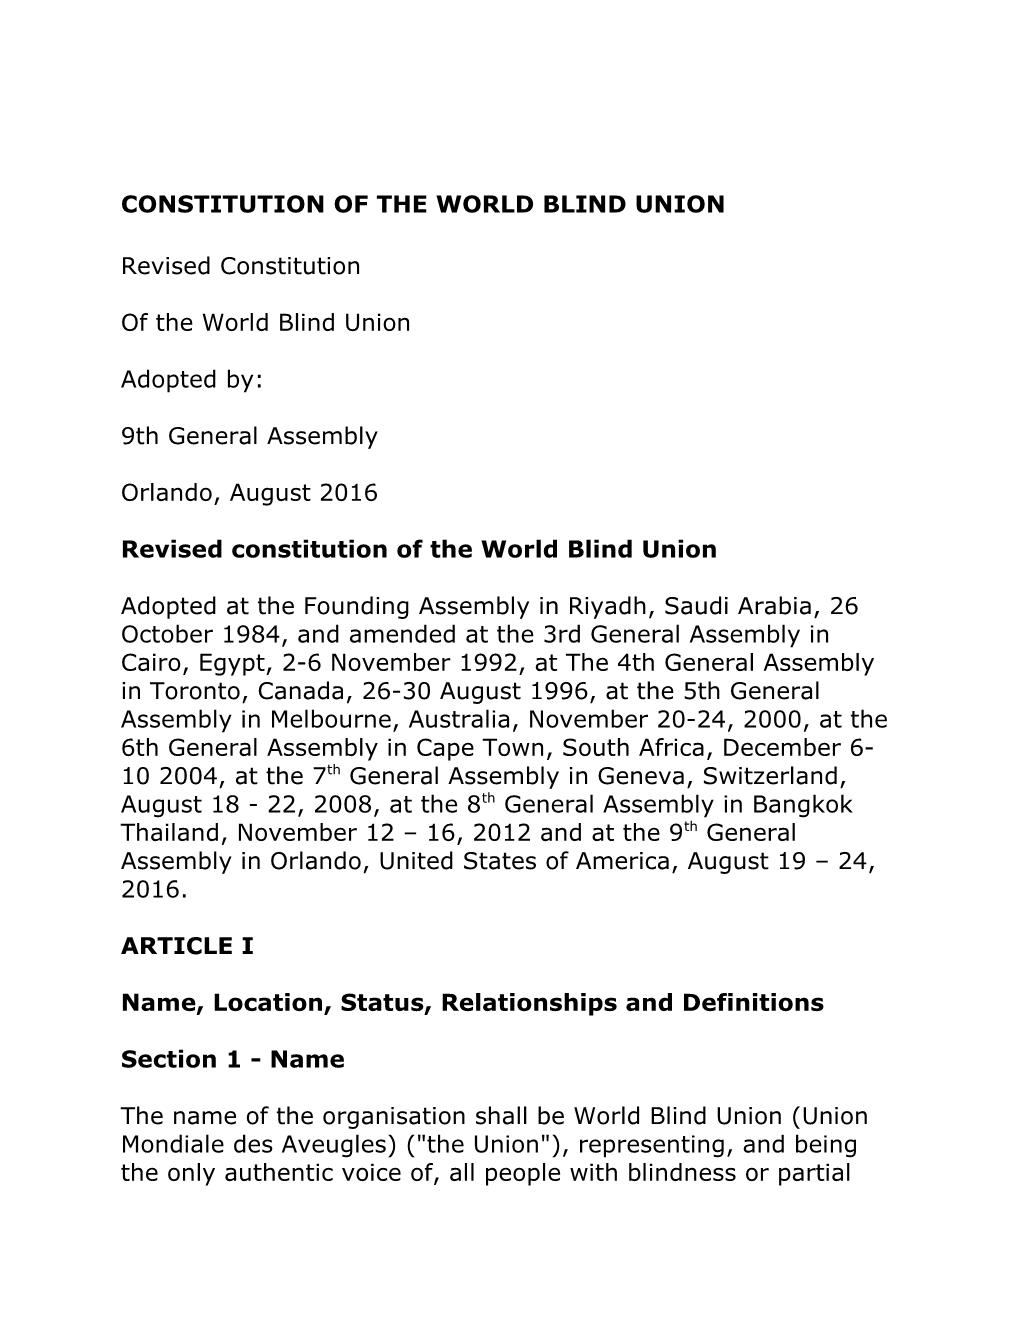 WBU Revised Constitution - 9Th GA 2016